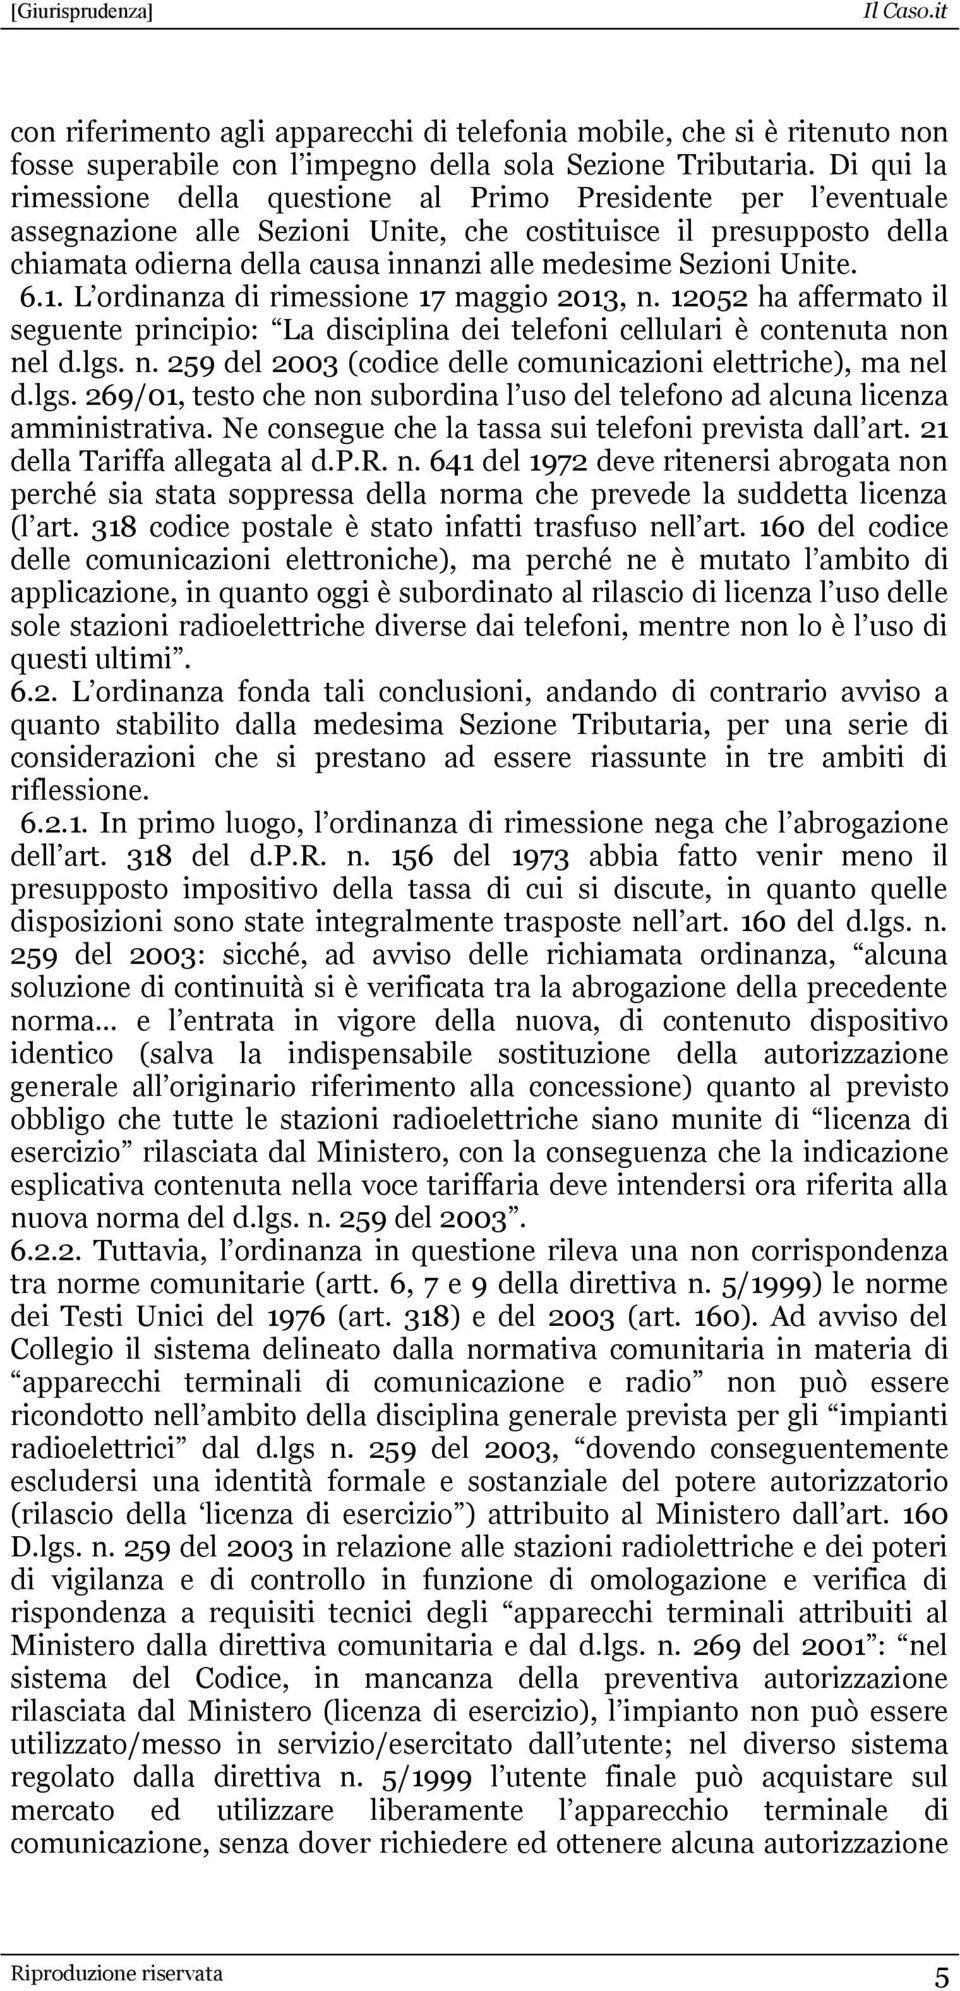 Sezioni Unite. 6.1. L ordinanza di rimessione 17 maggio 2013, n. 12052 ha affermato il seguente principio: La disciplina dei telefoni cellulari è contenuta non nel d.lgs. n. 259 del 2003 (codice delle comunicazioni elettriche), ma nel d.